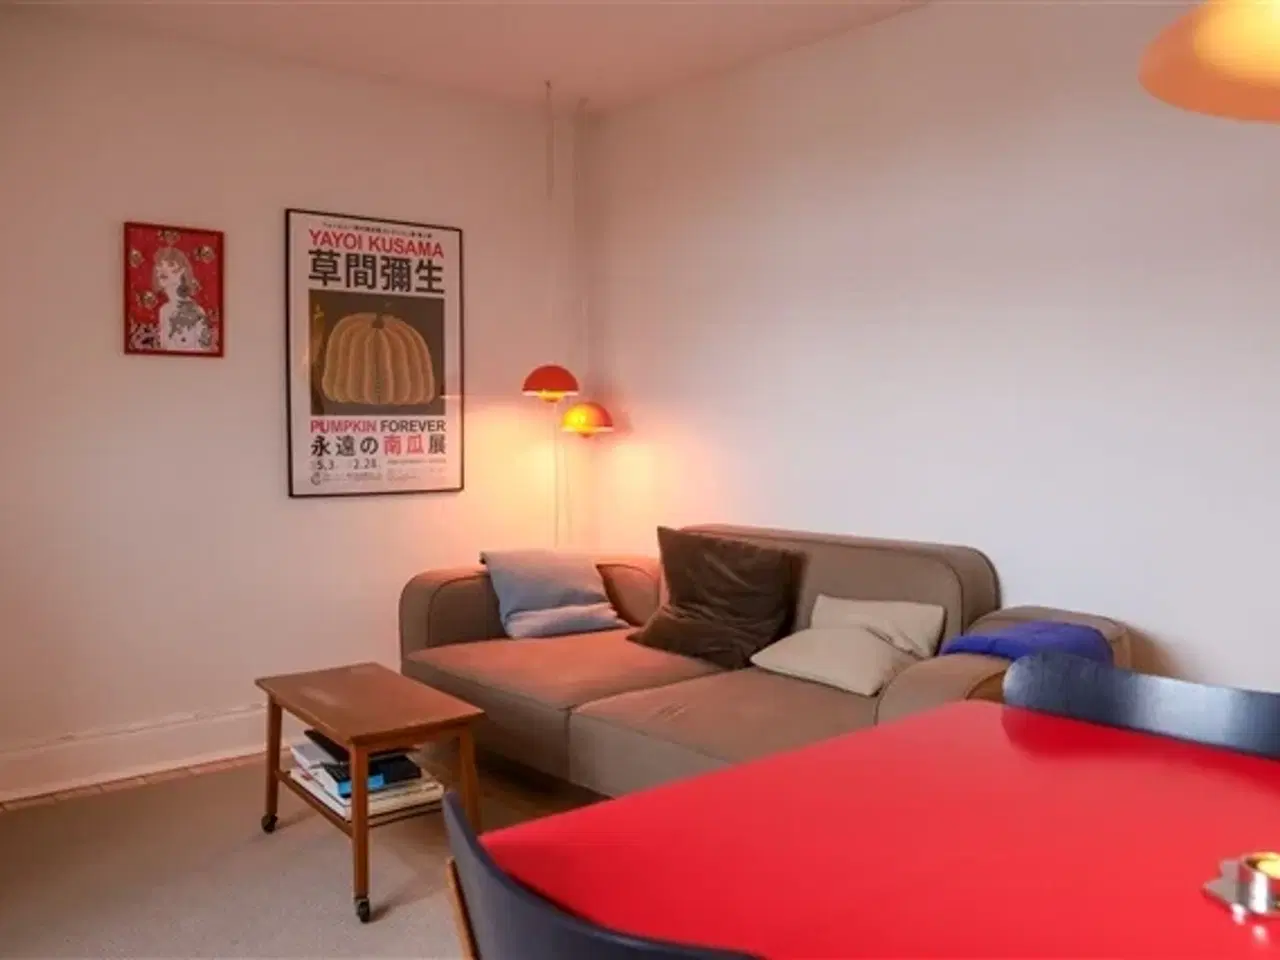 Billede 1 - 2-værelses lejlighed i Brønshøj (11.000kr inkl. alt)